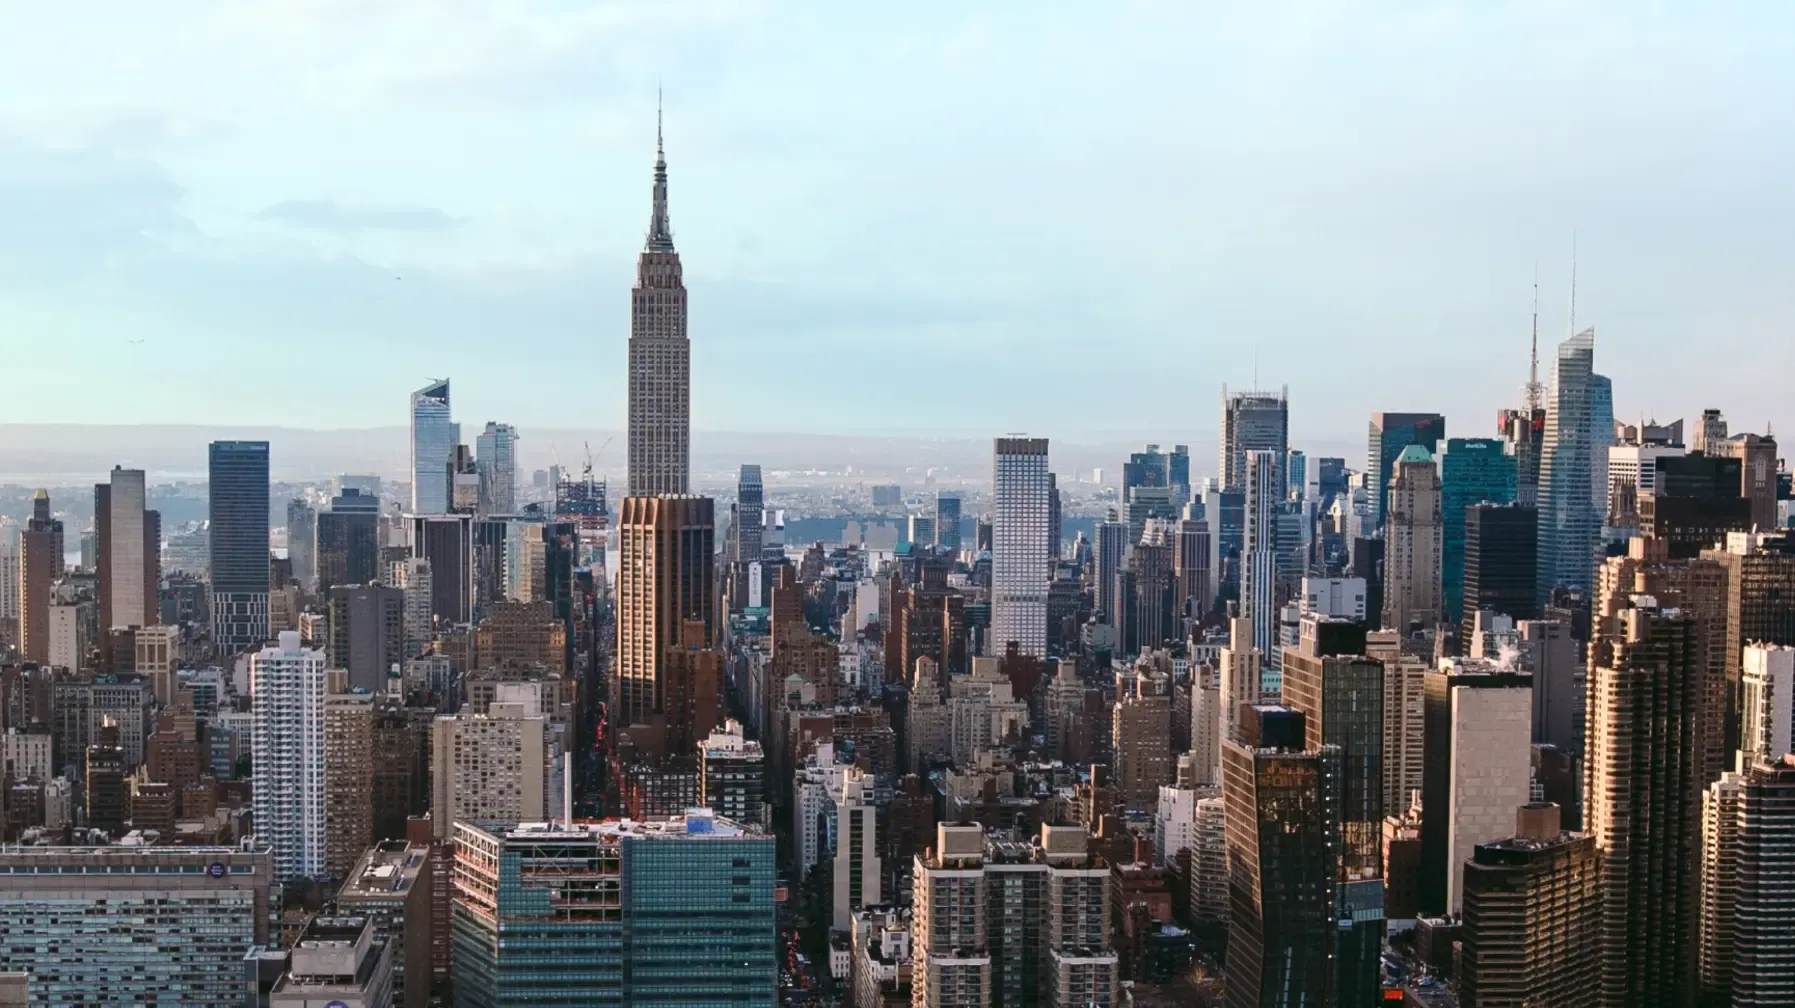 New York City skyline on a clear day